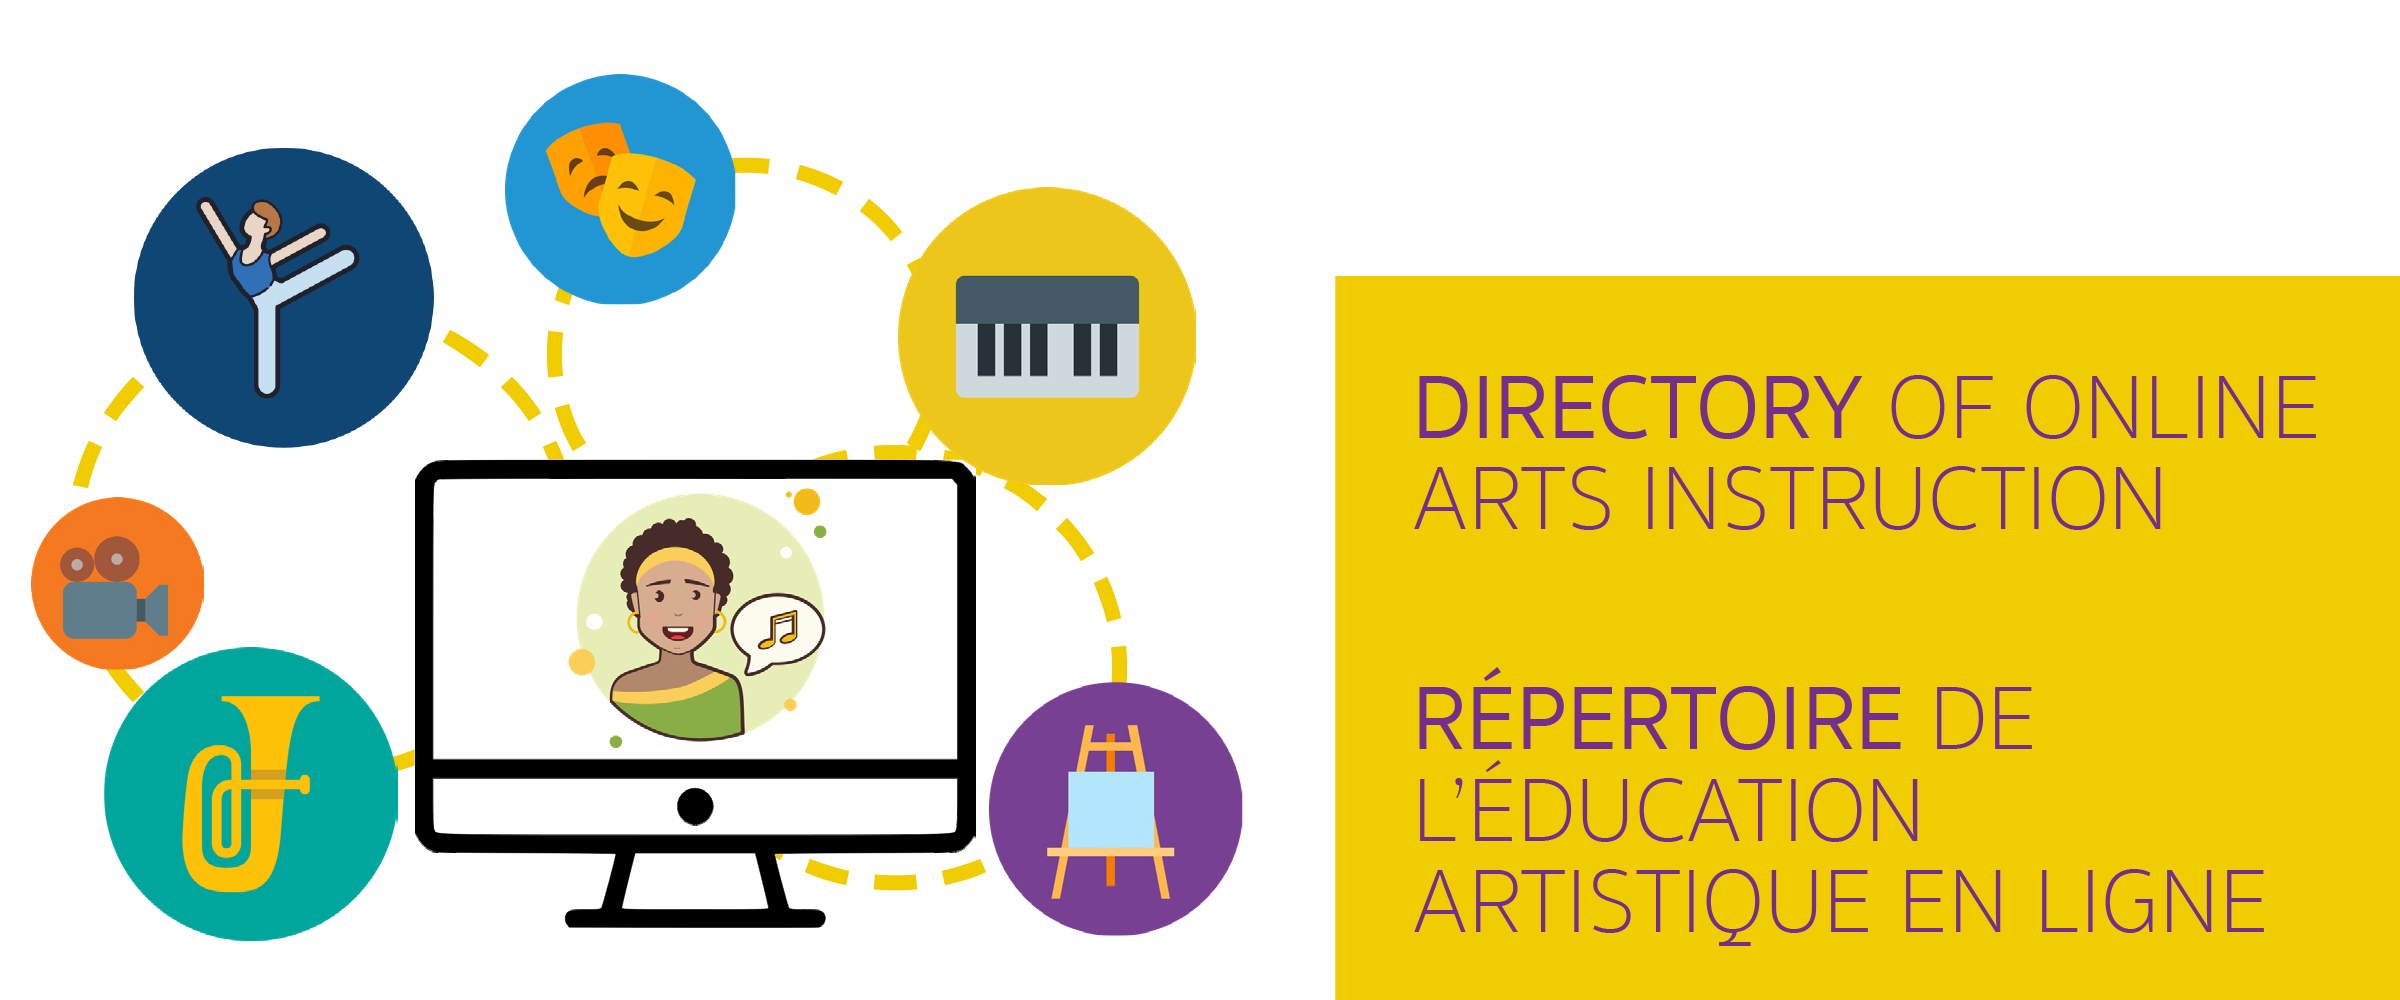 Directory of Online Arts Instruction / Répertoire de l’éducation artistique en ligne